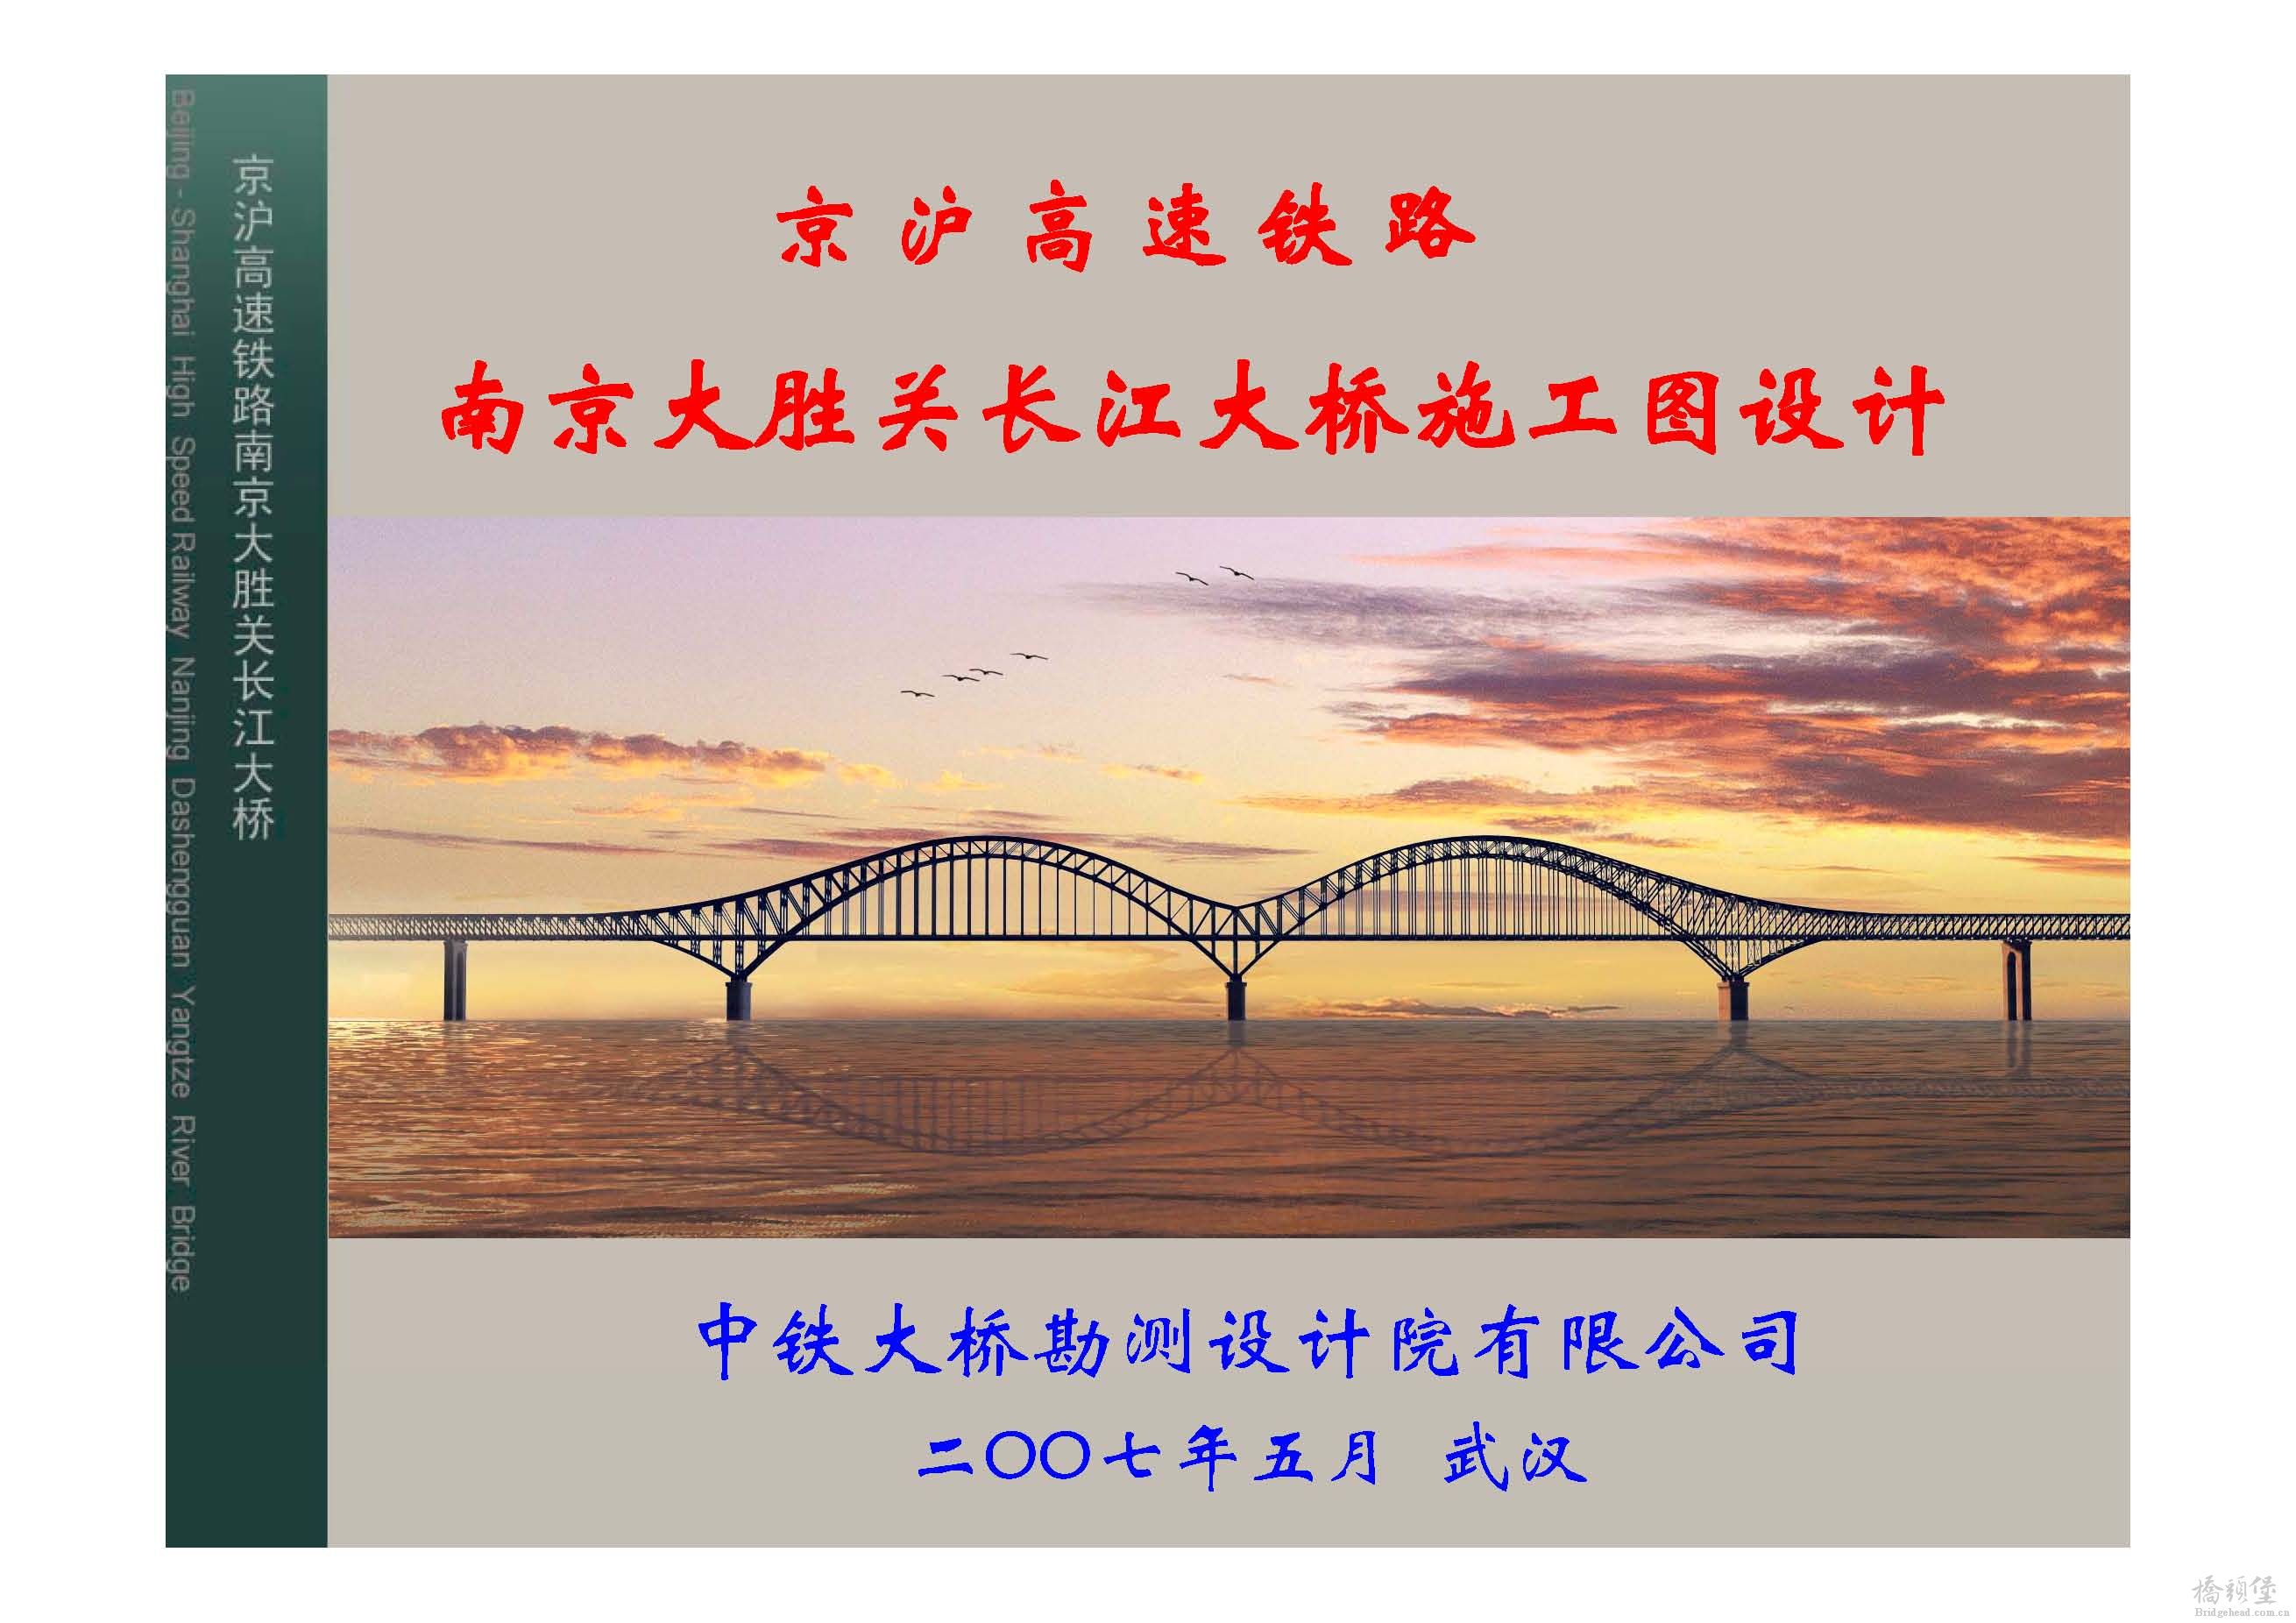 南京大胜关桥施工设计汇报_页面_01.jpg